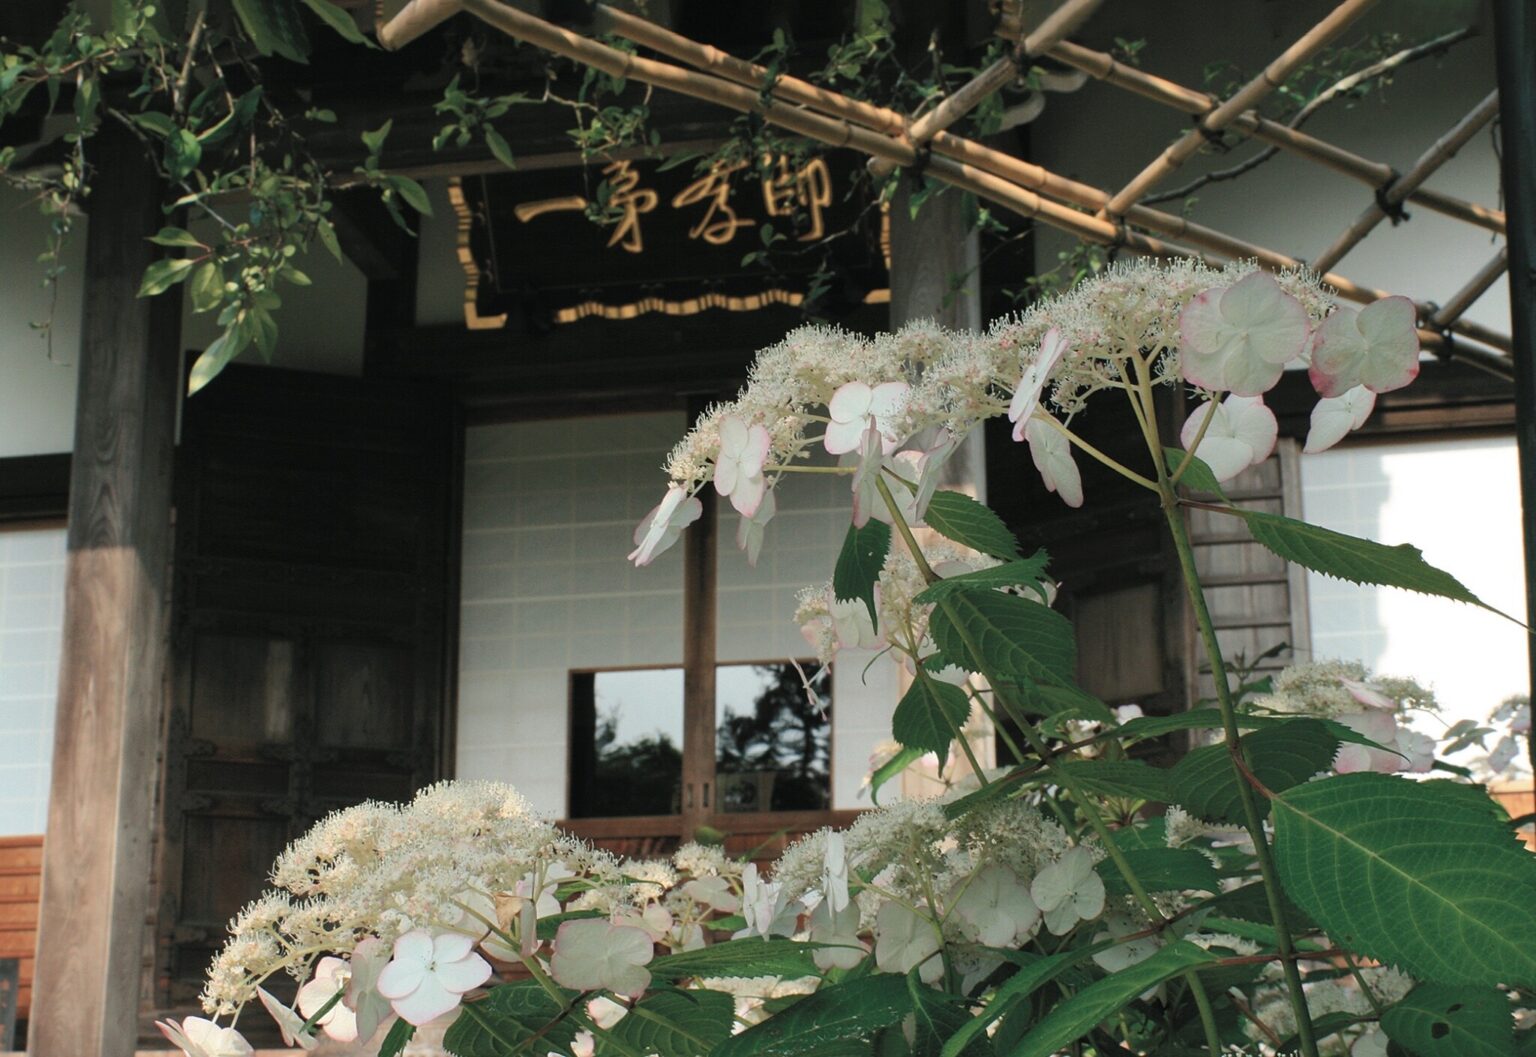 鎌倉の寺社の中でも境内の草木の種類が多い〈光則寺〉。全国から集められた繊細で気品のあるヤマアジサイは美しく、花の奥深さを感じることができる。